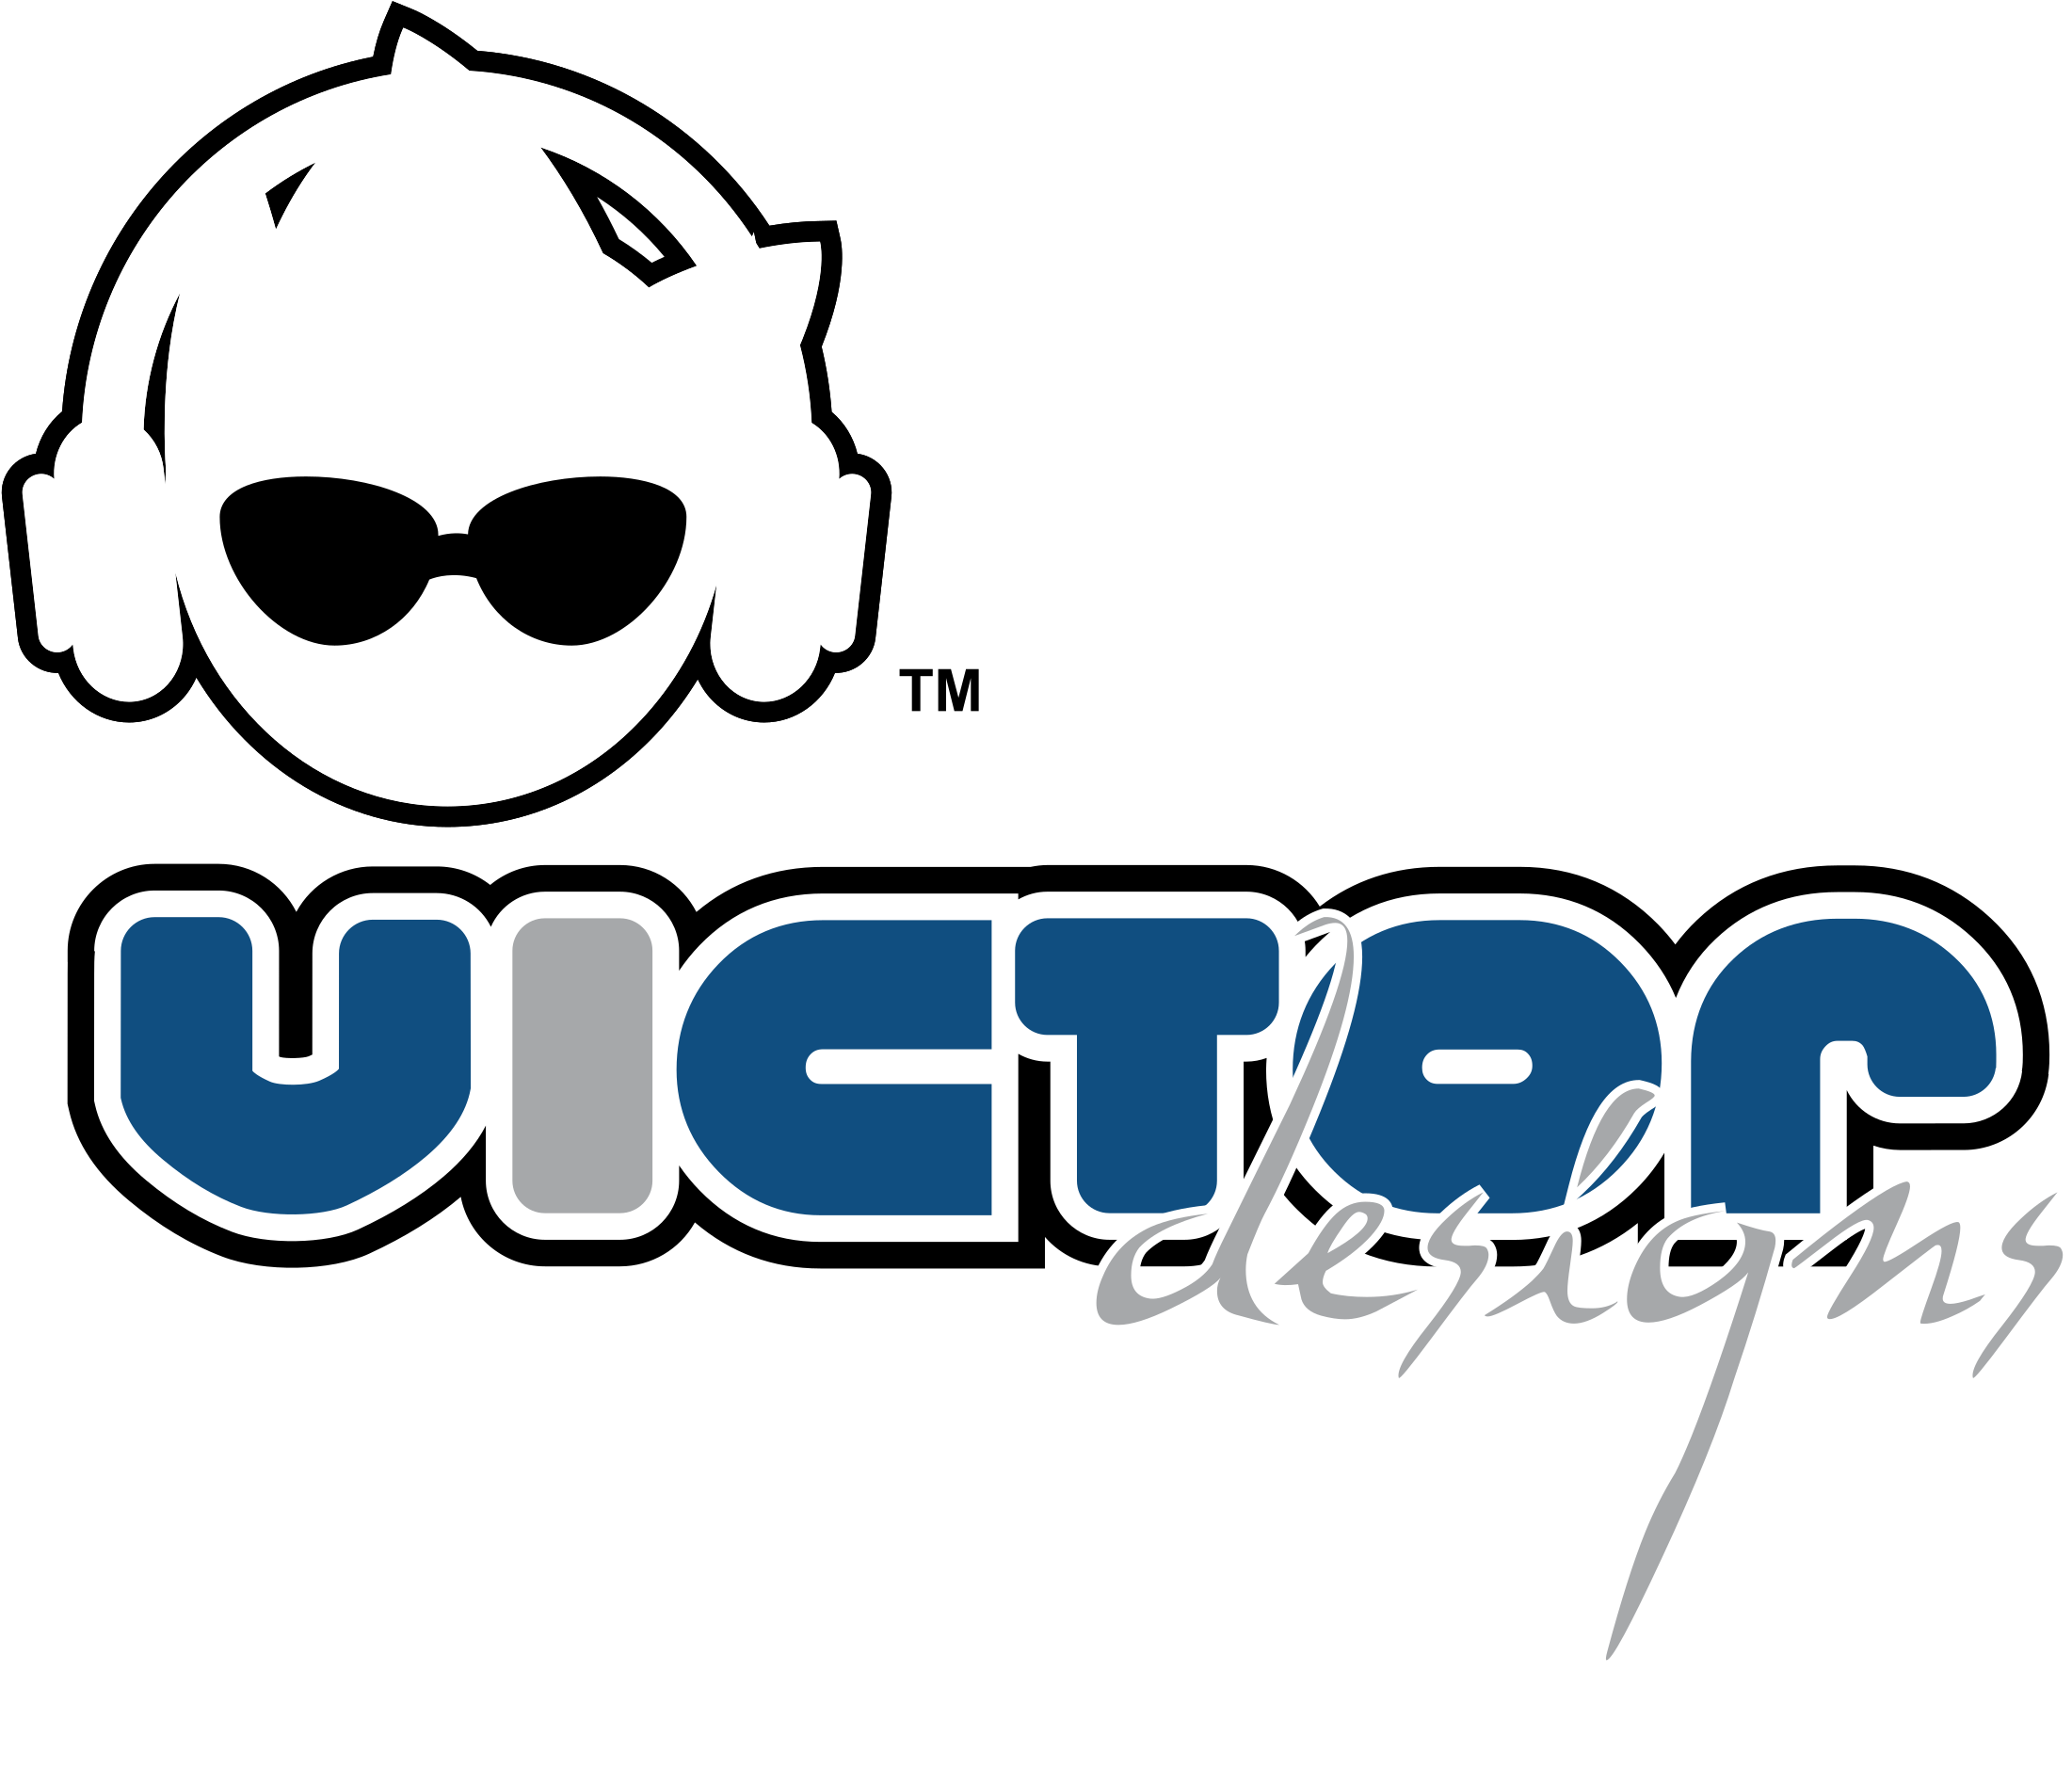 Victor Designs Logo Png Transparent - Victor (2400x2400), Png Download